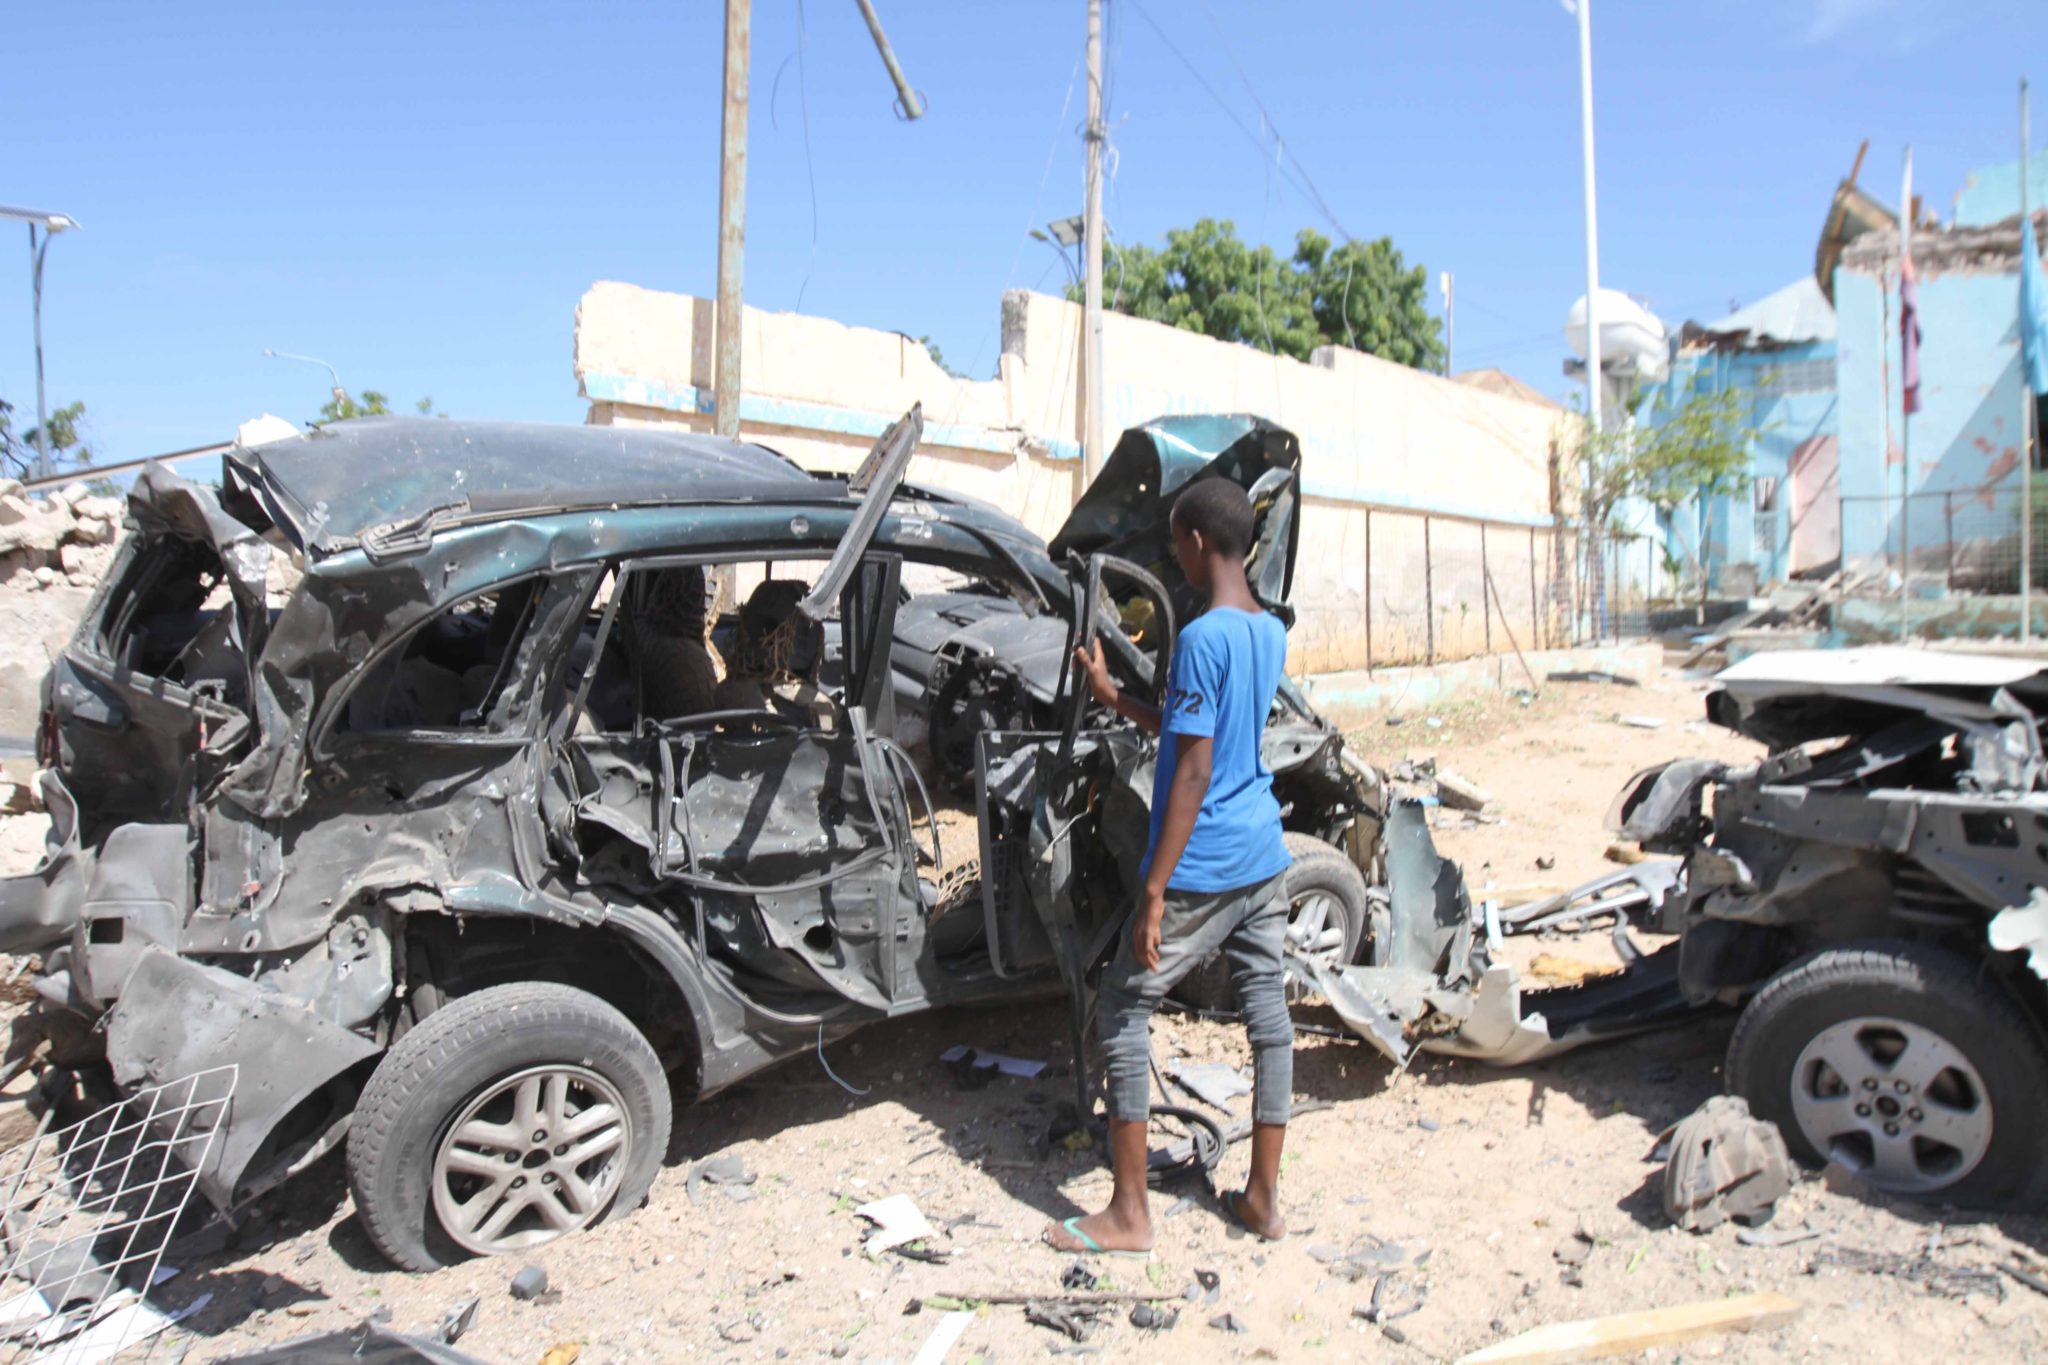 Zamach bombowy w Mogadiszu, stolicy Somalii. Zginęło 10 osób